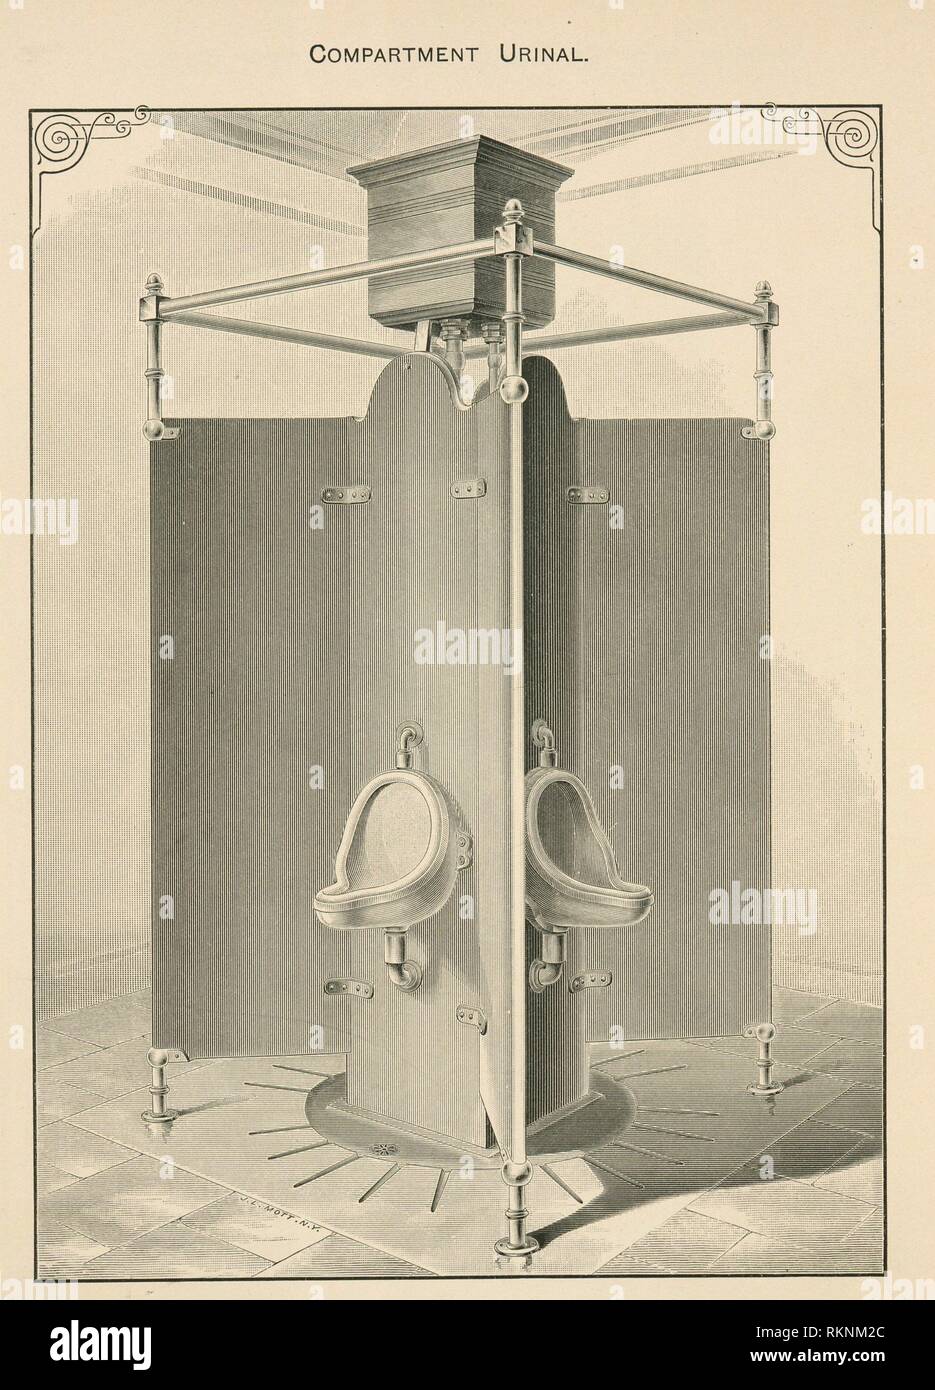 Résultat de recherche d'images pour "J.L. Mott iron works". urinoir"